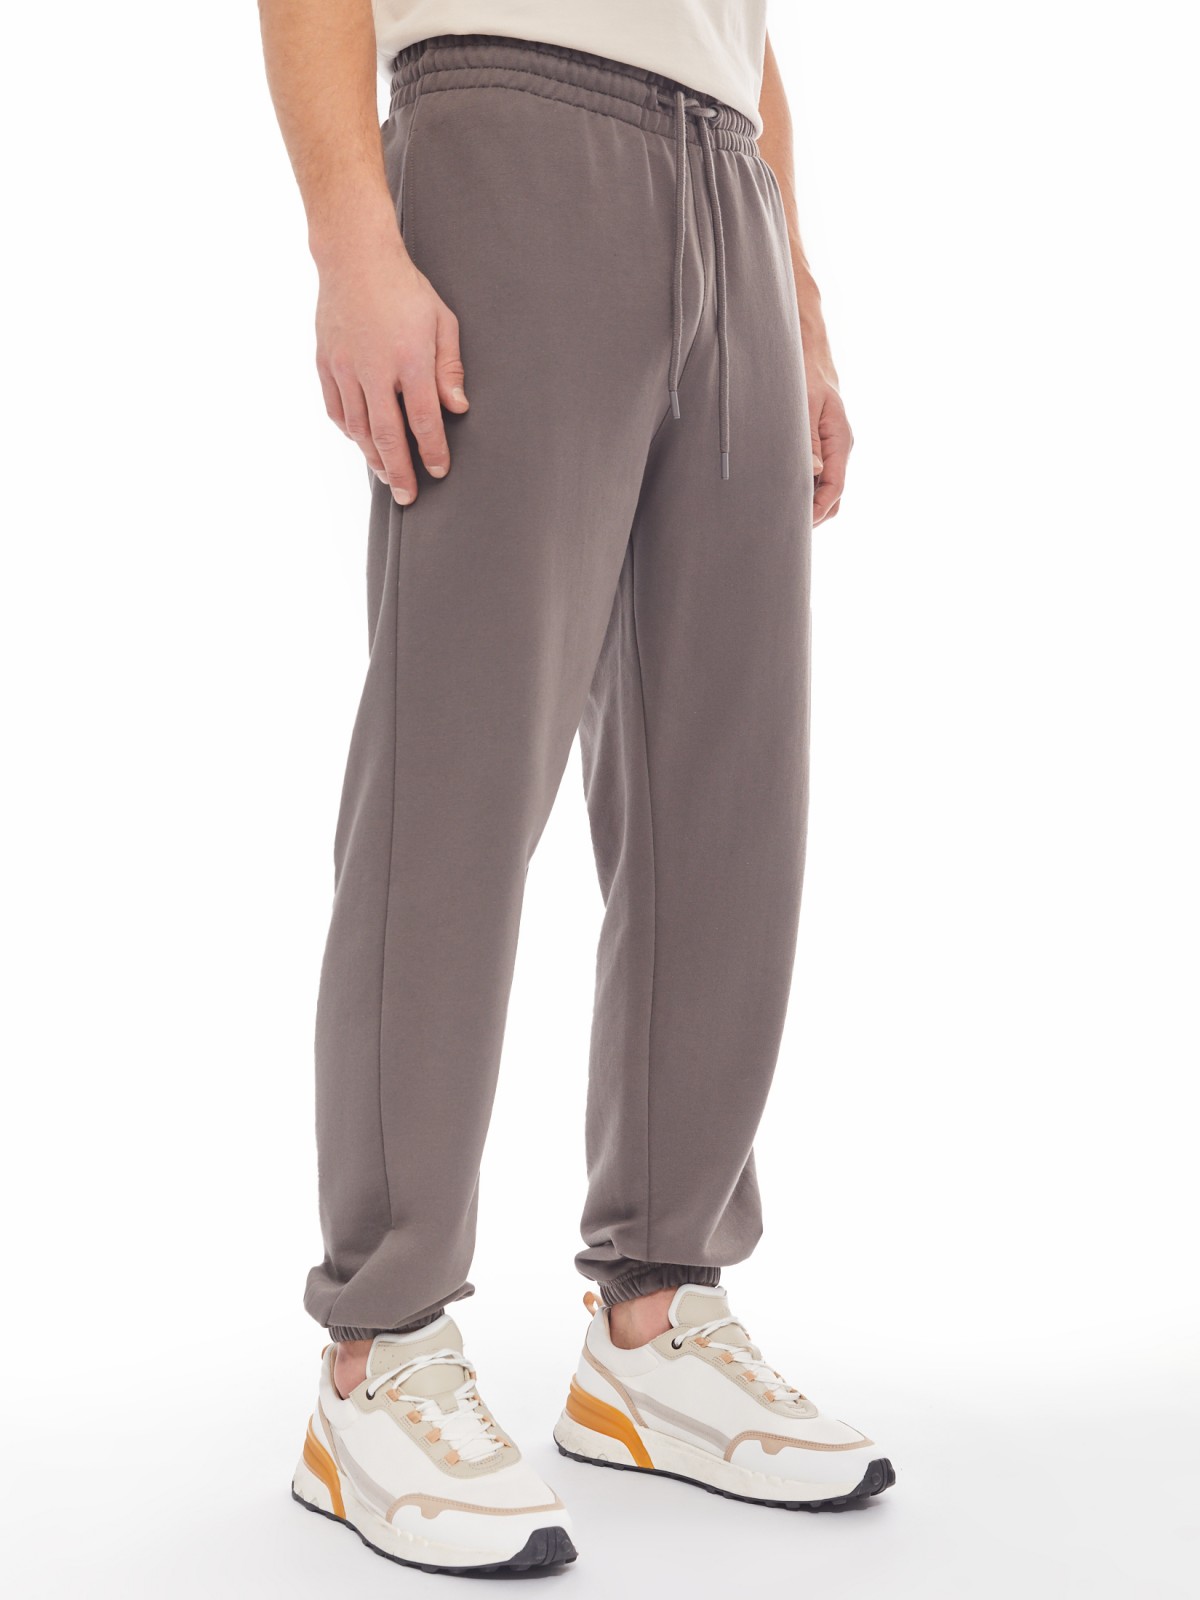 Трикотажные брюки-джоггеры в спортивном стиле zolla 014137660042, цвет серый, размер S - фото 3